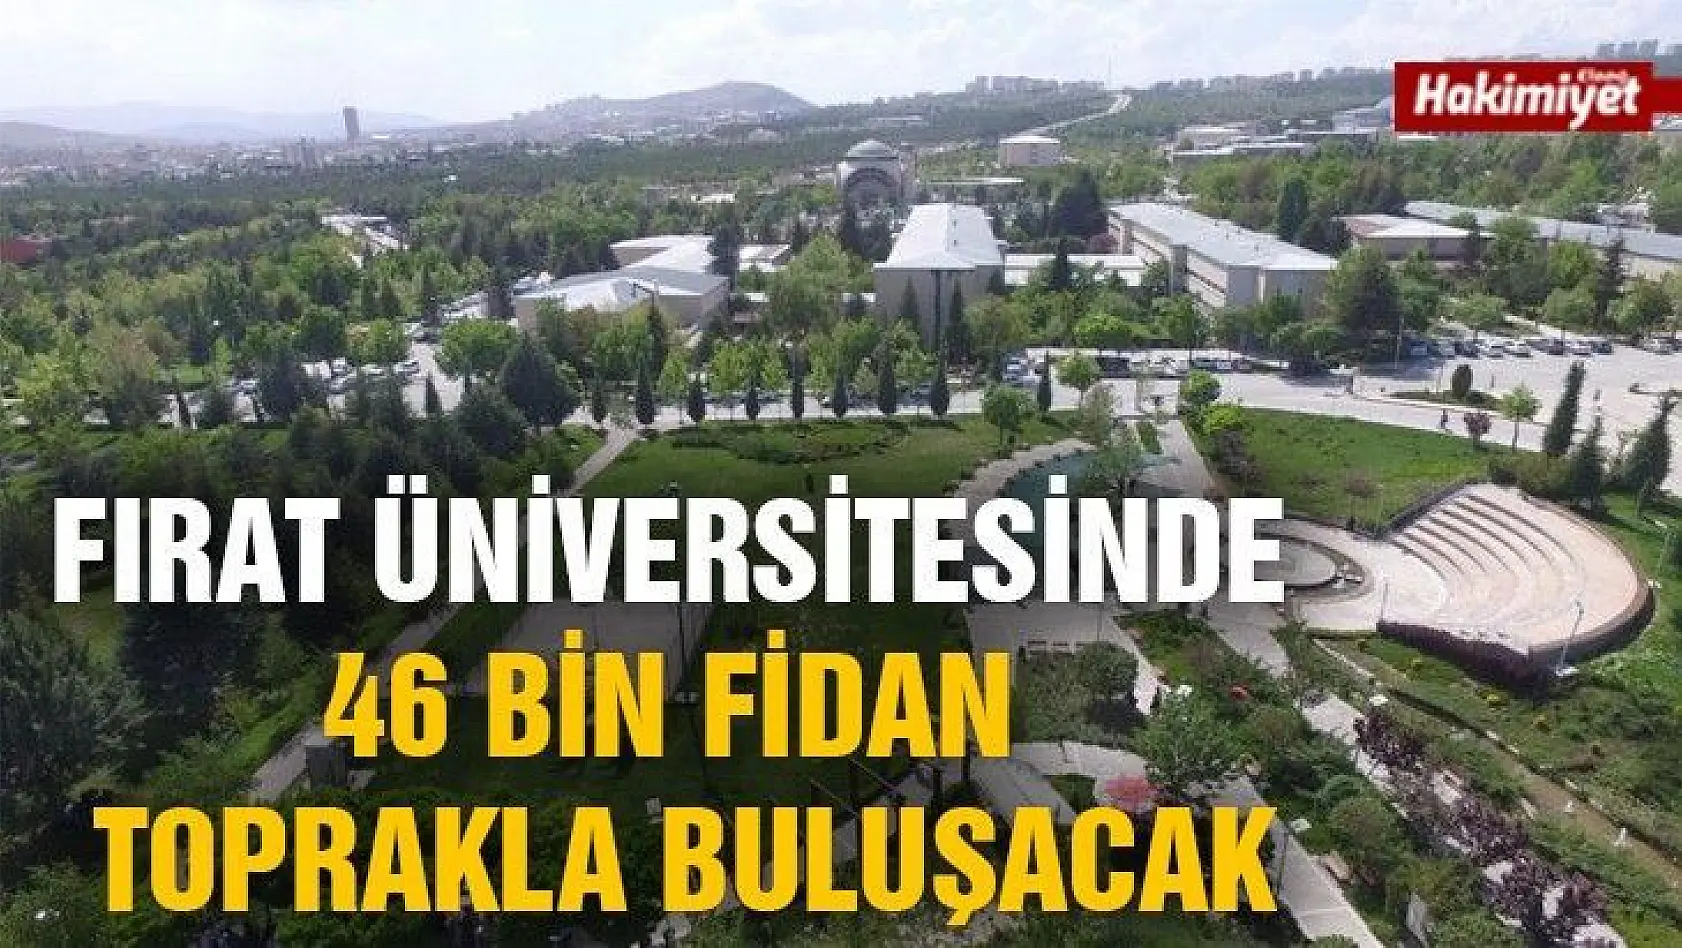 Fırat Üniversitesinde 46 bin fidan toprakla buluşacak